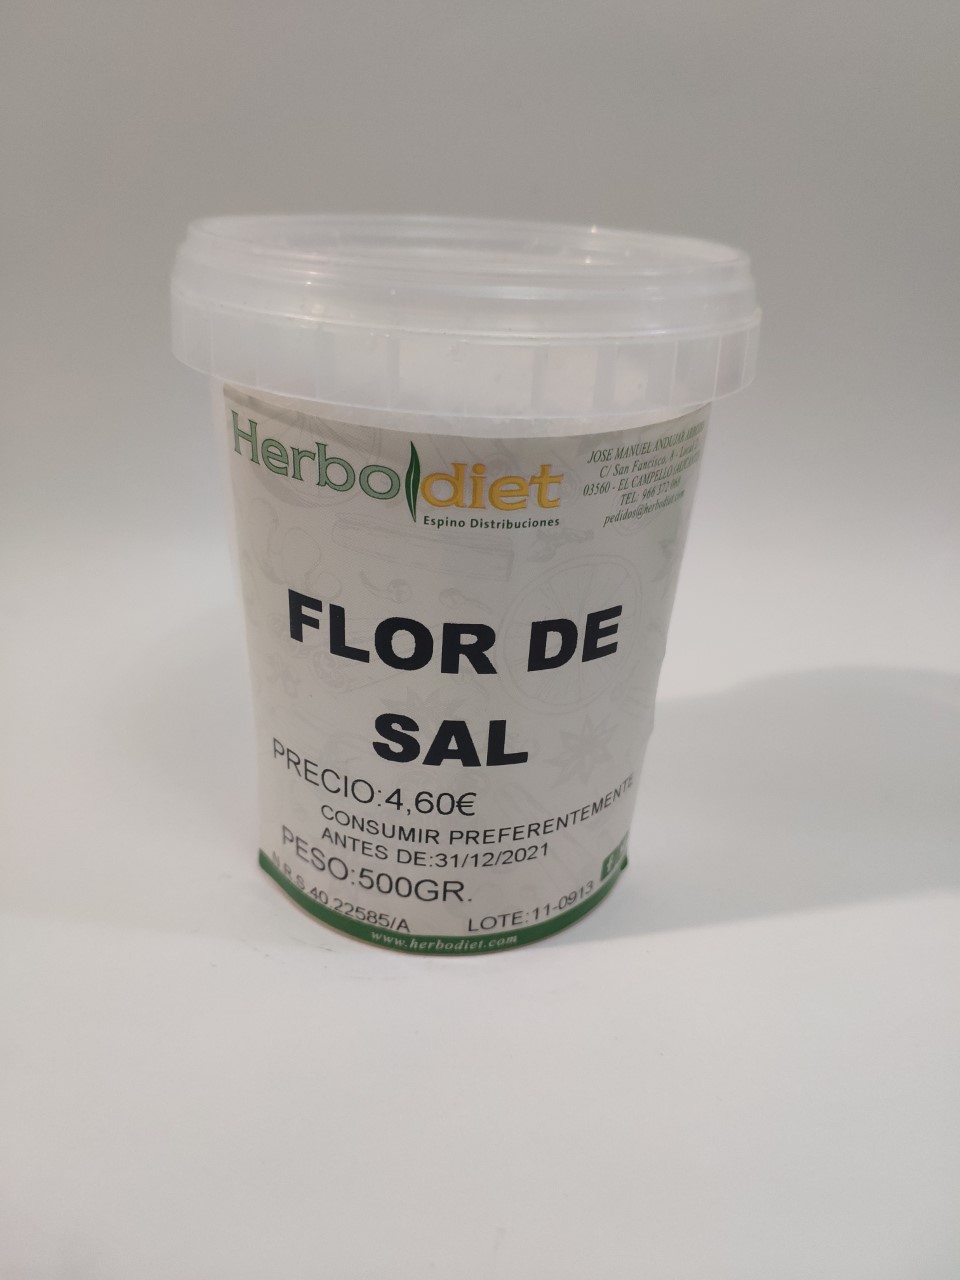 Flor de sal, 500g